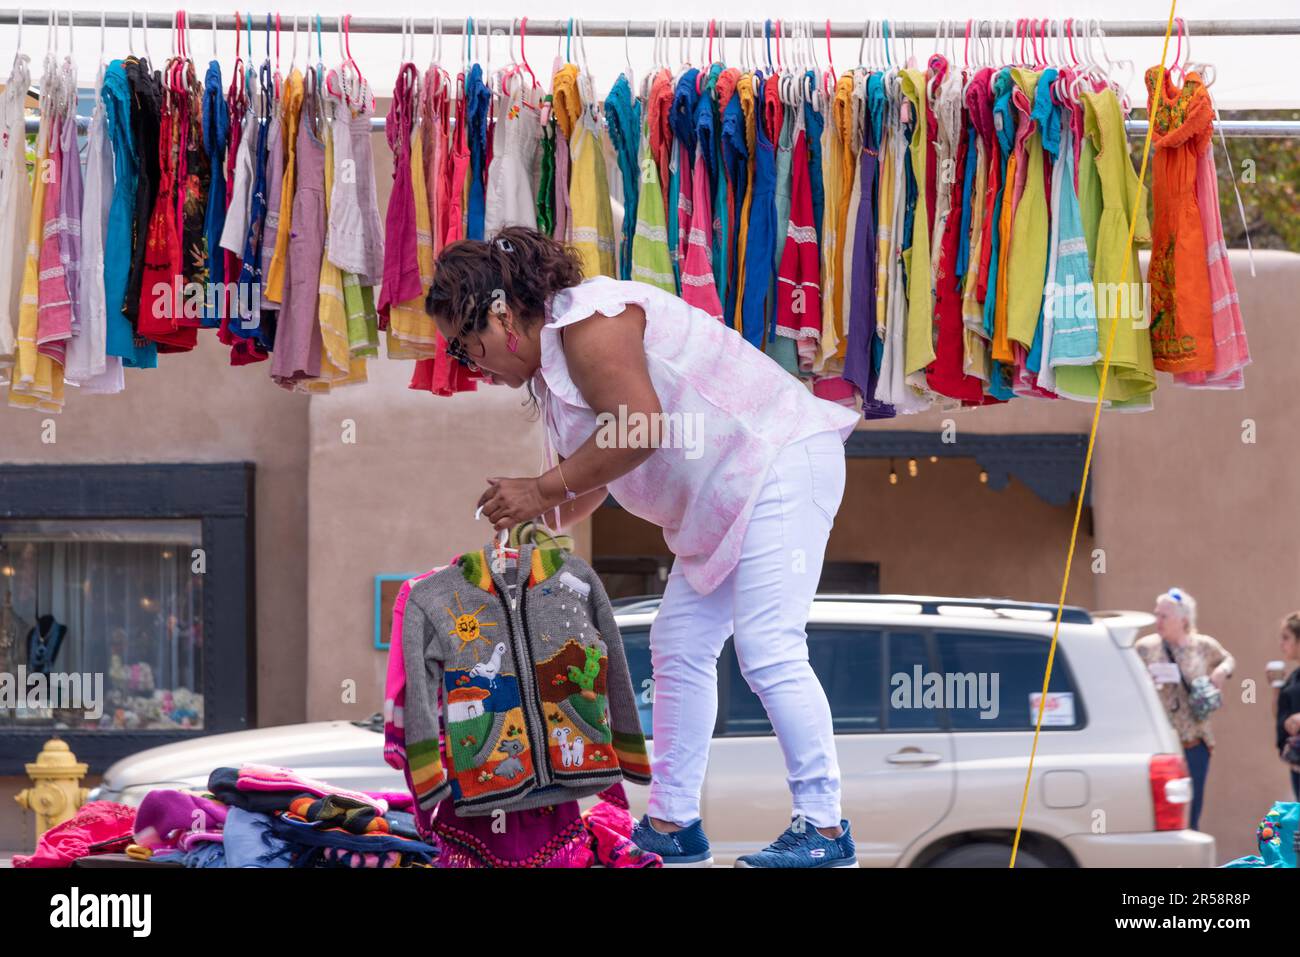 Eine Verkäuferin wacht auf, wenn sie ihren Stand für den Tag bereitstellt, in dem importierte Kleidung aufgehängt wird, wahrscheinlich aus Mexiko oder Mittelamerika – Santa Fe, New Mexico, USA Stockfoto